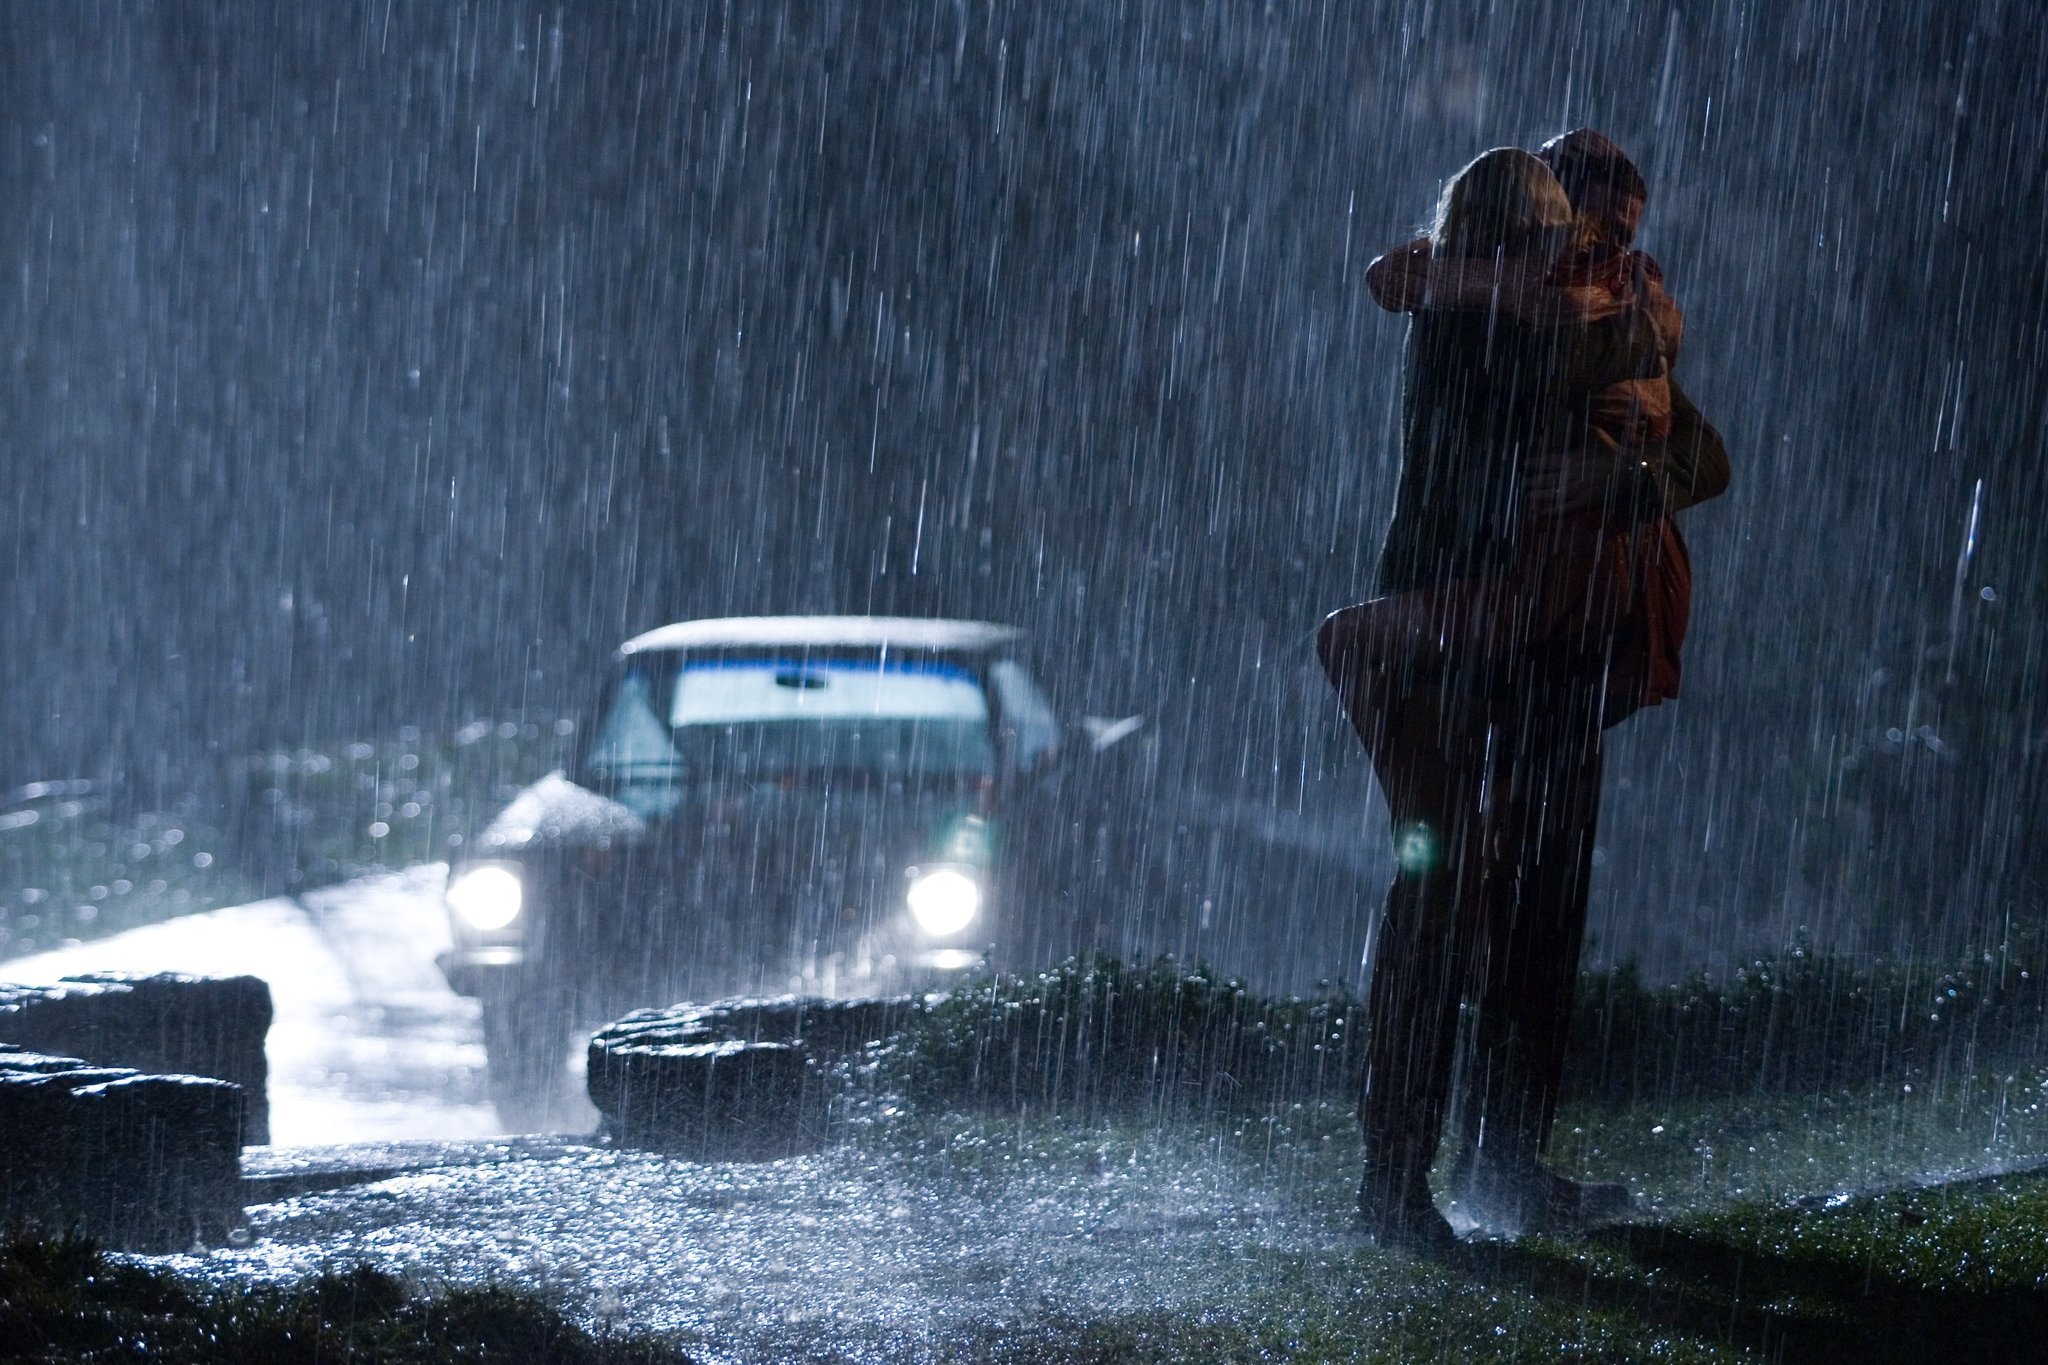 Looking for the rain. Человек под дождем. Идет под дождем. Девушка дождь. Машина дождь.